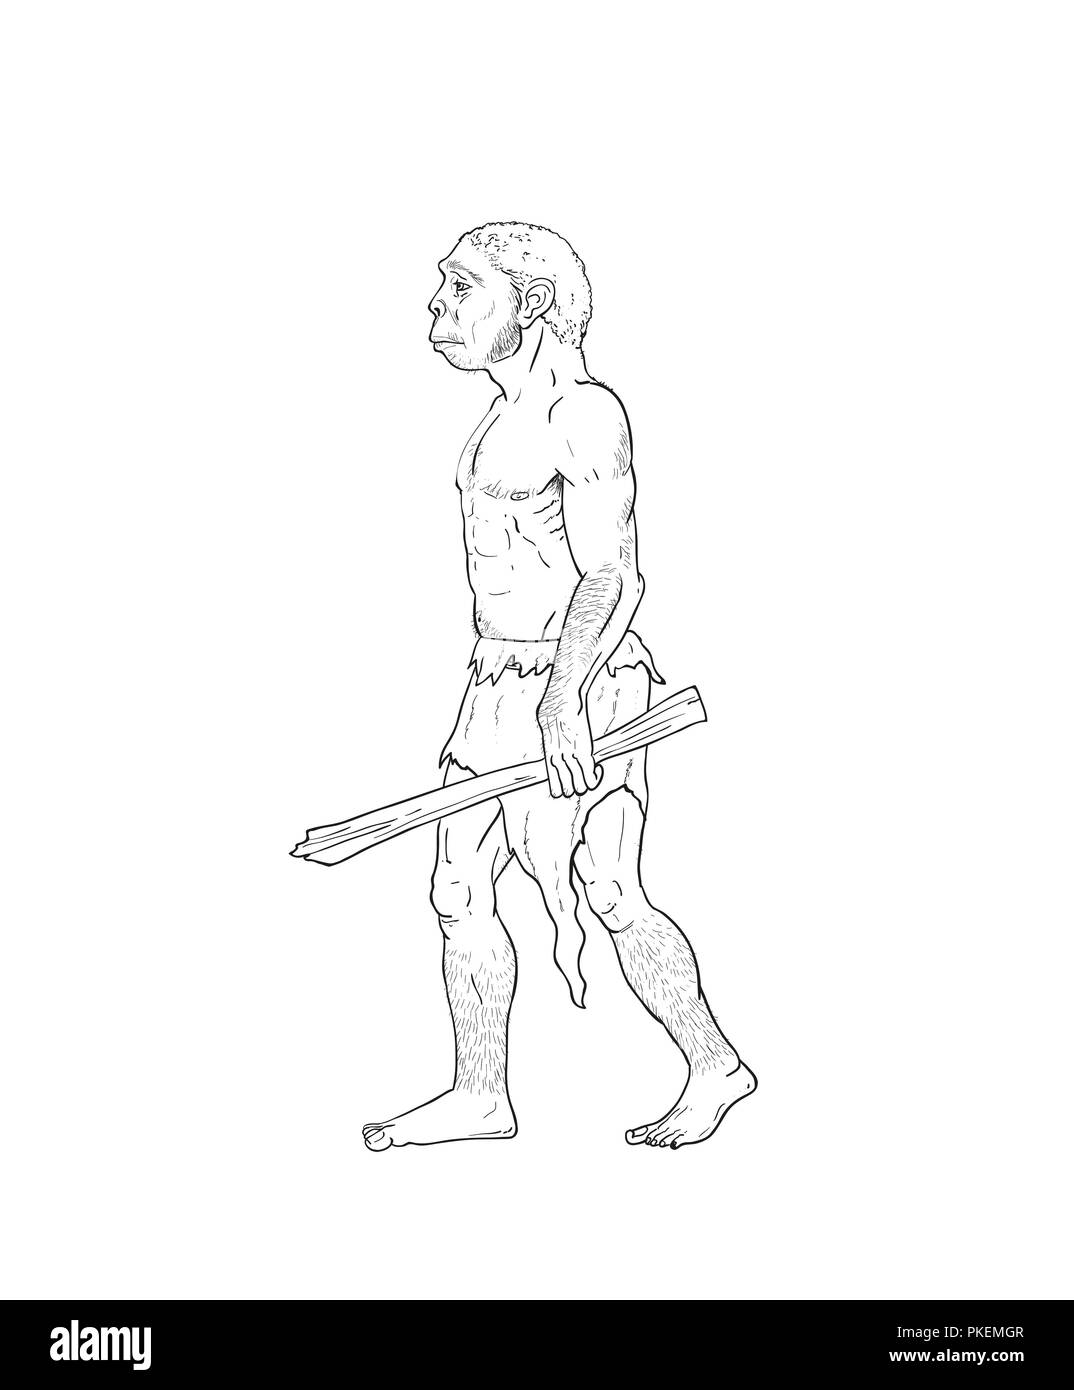 Зарисовки неандертальца легкие